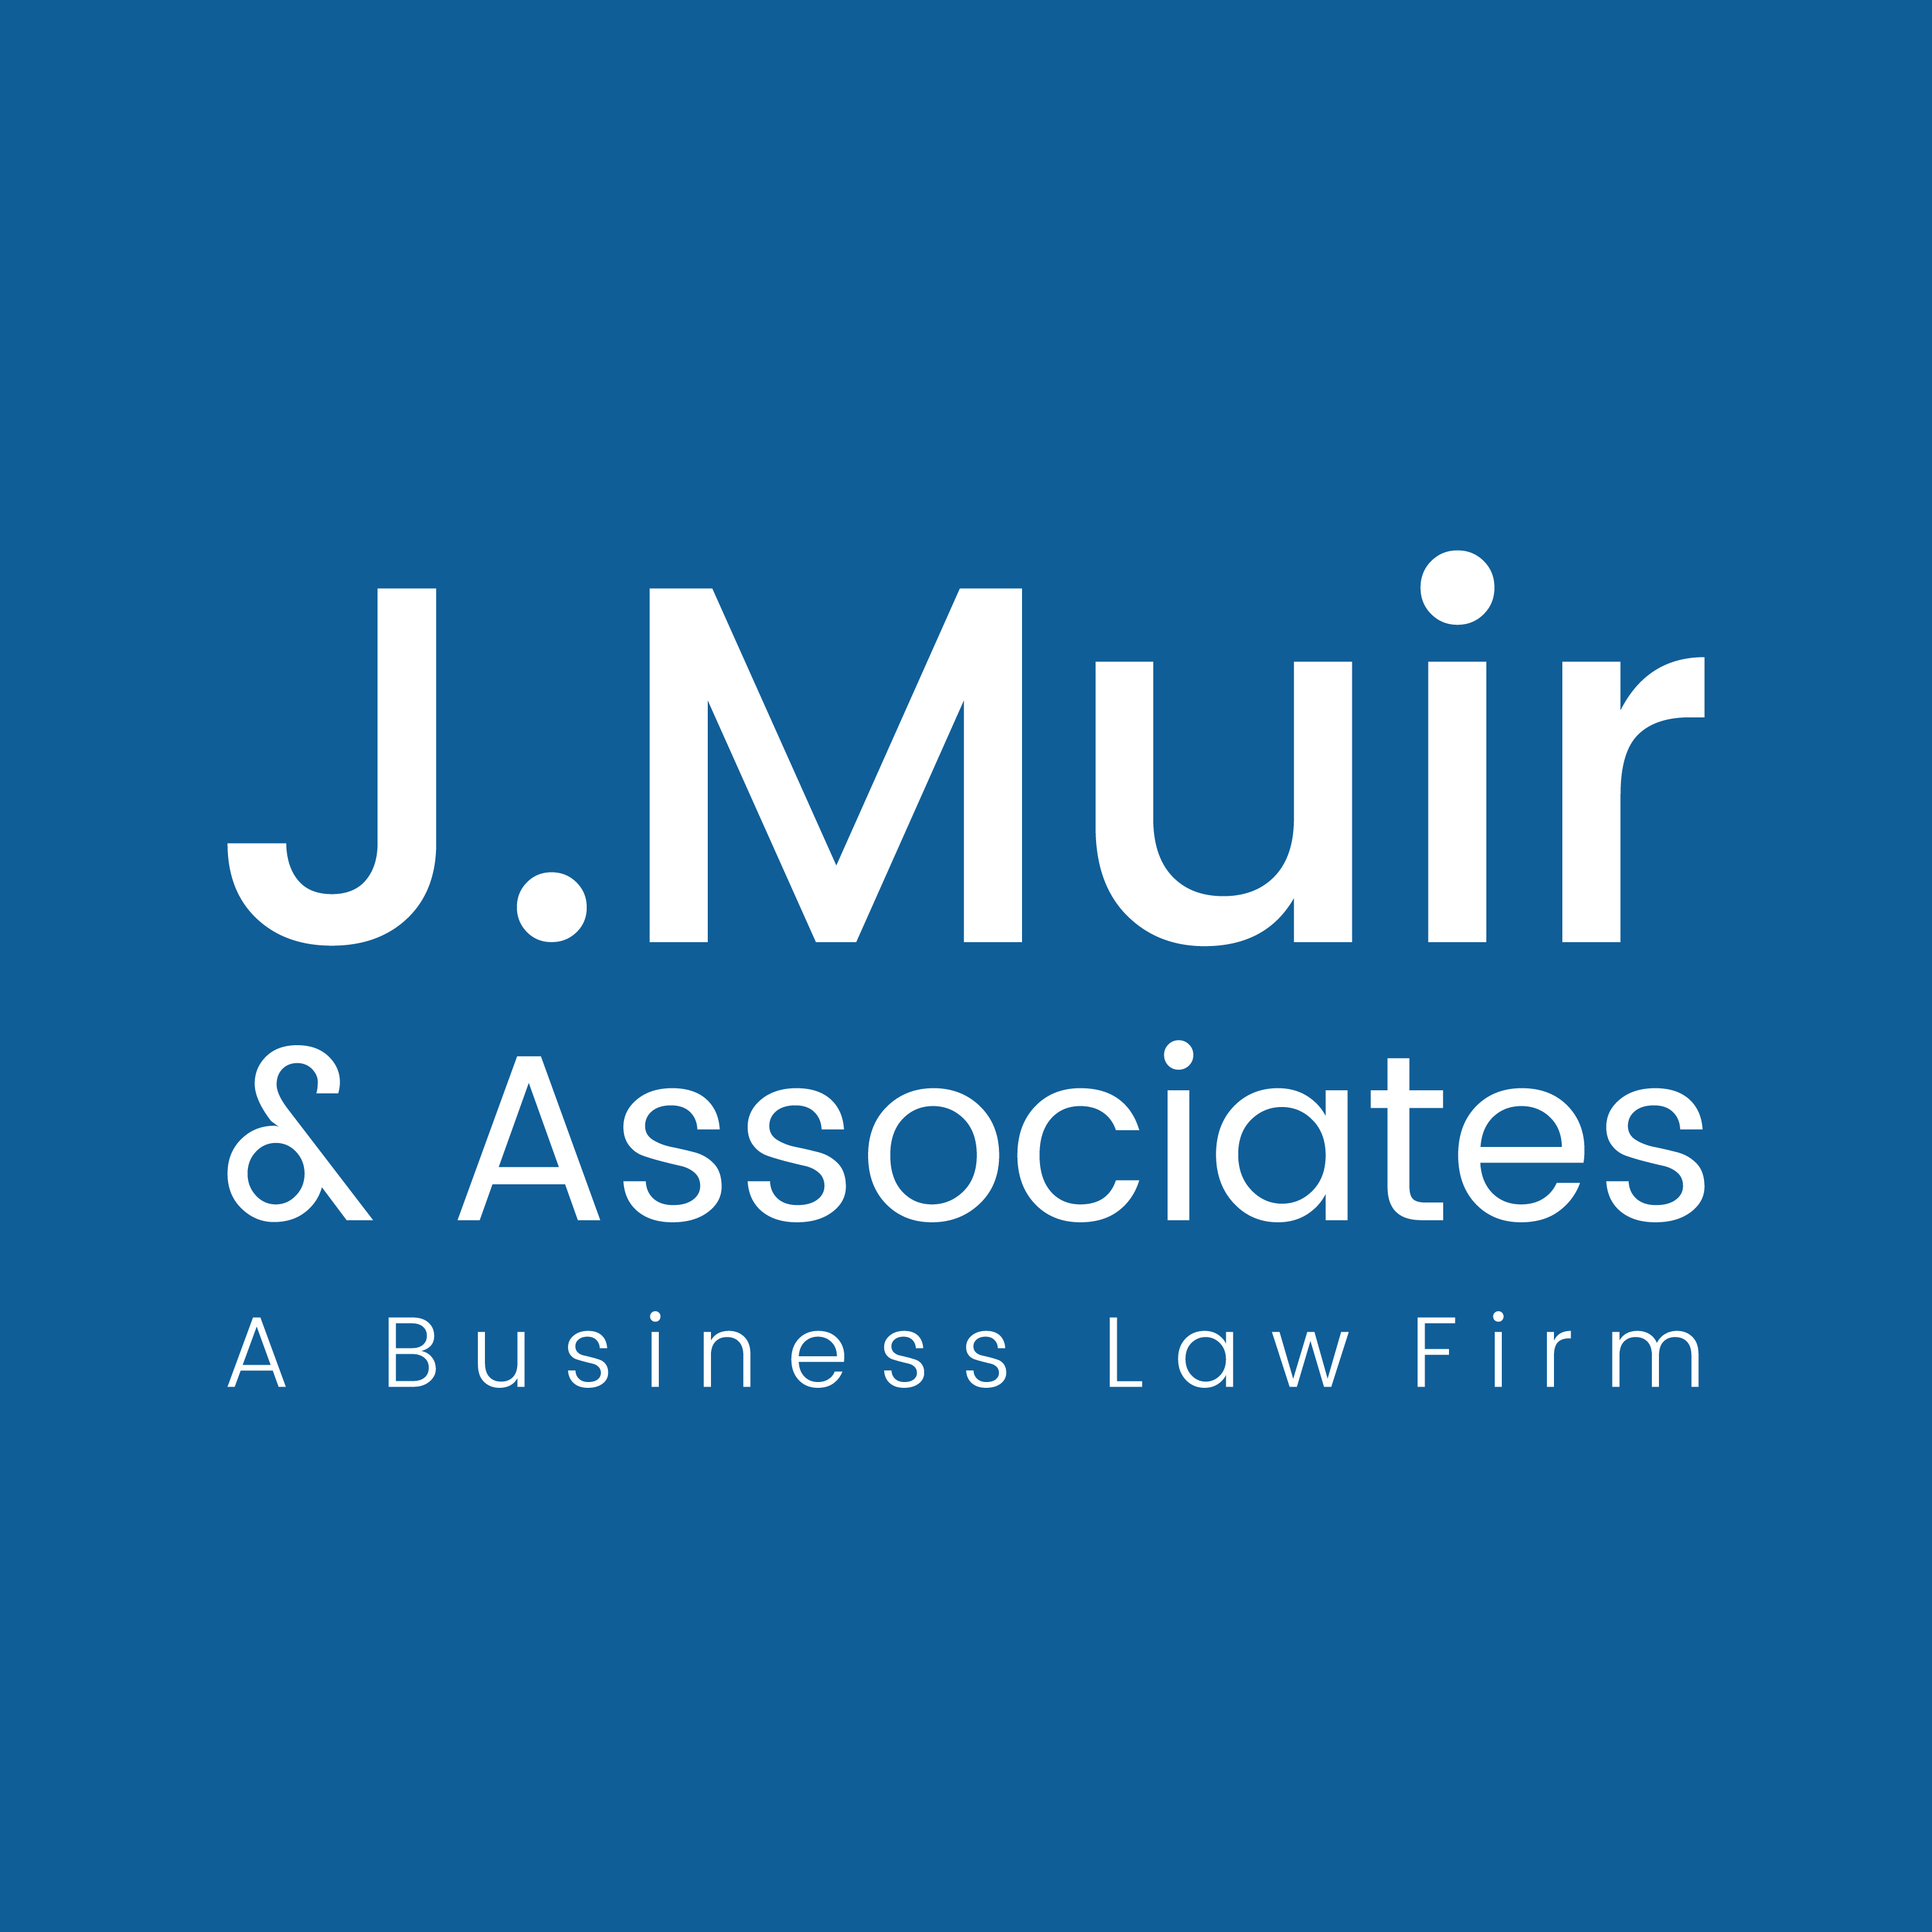 J. Muir & Associates